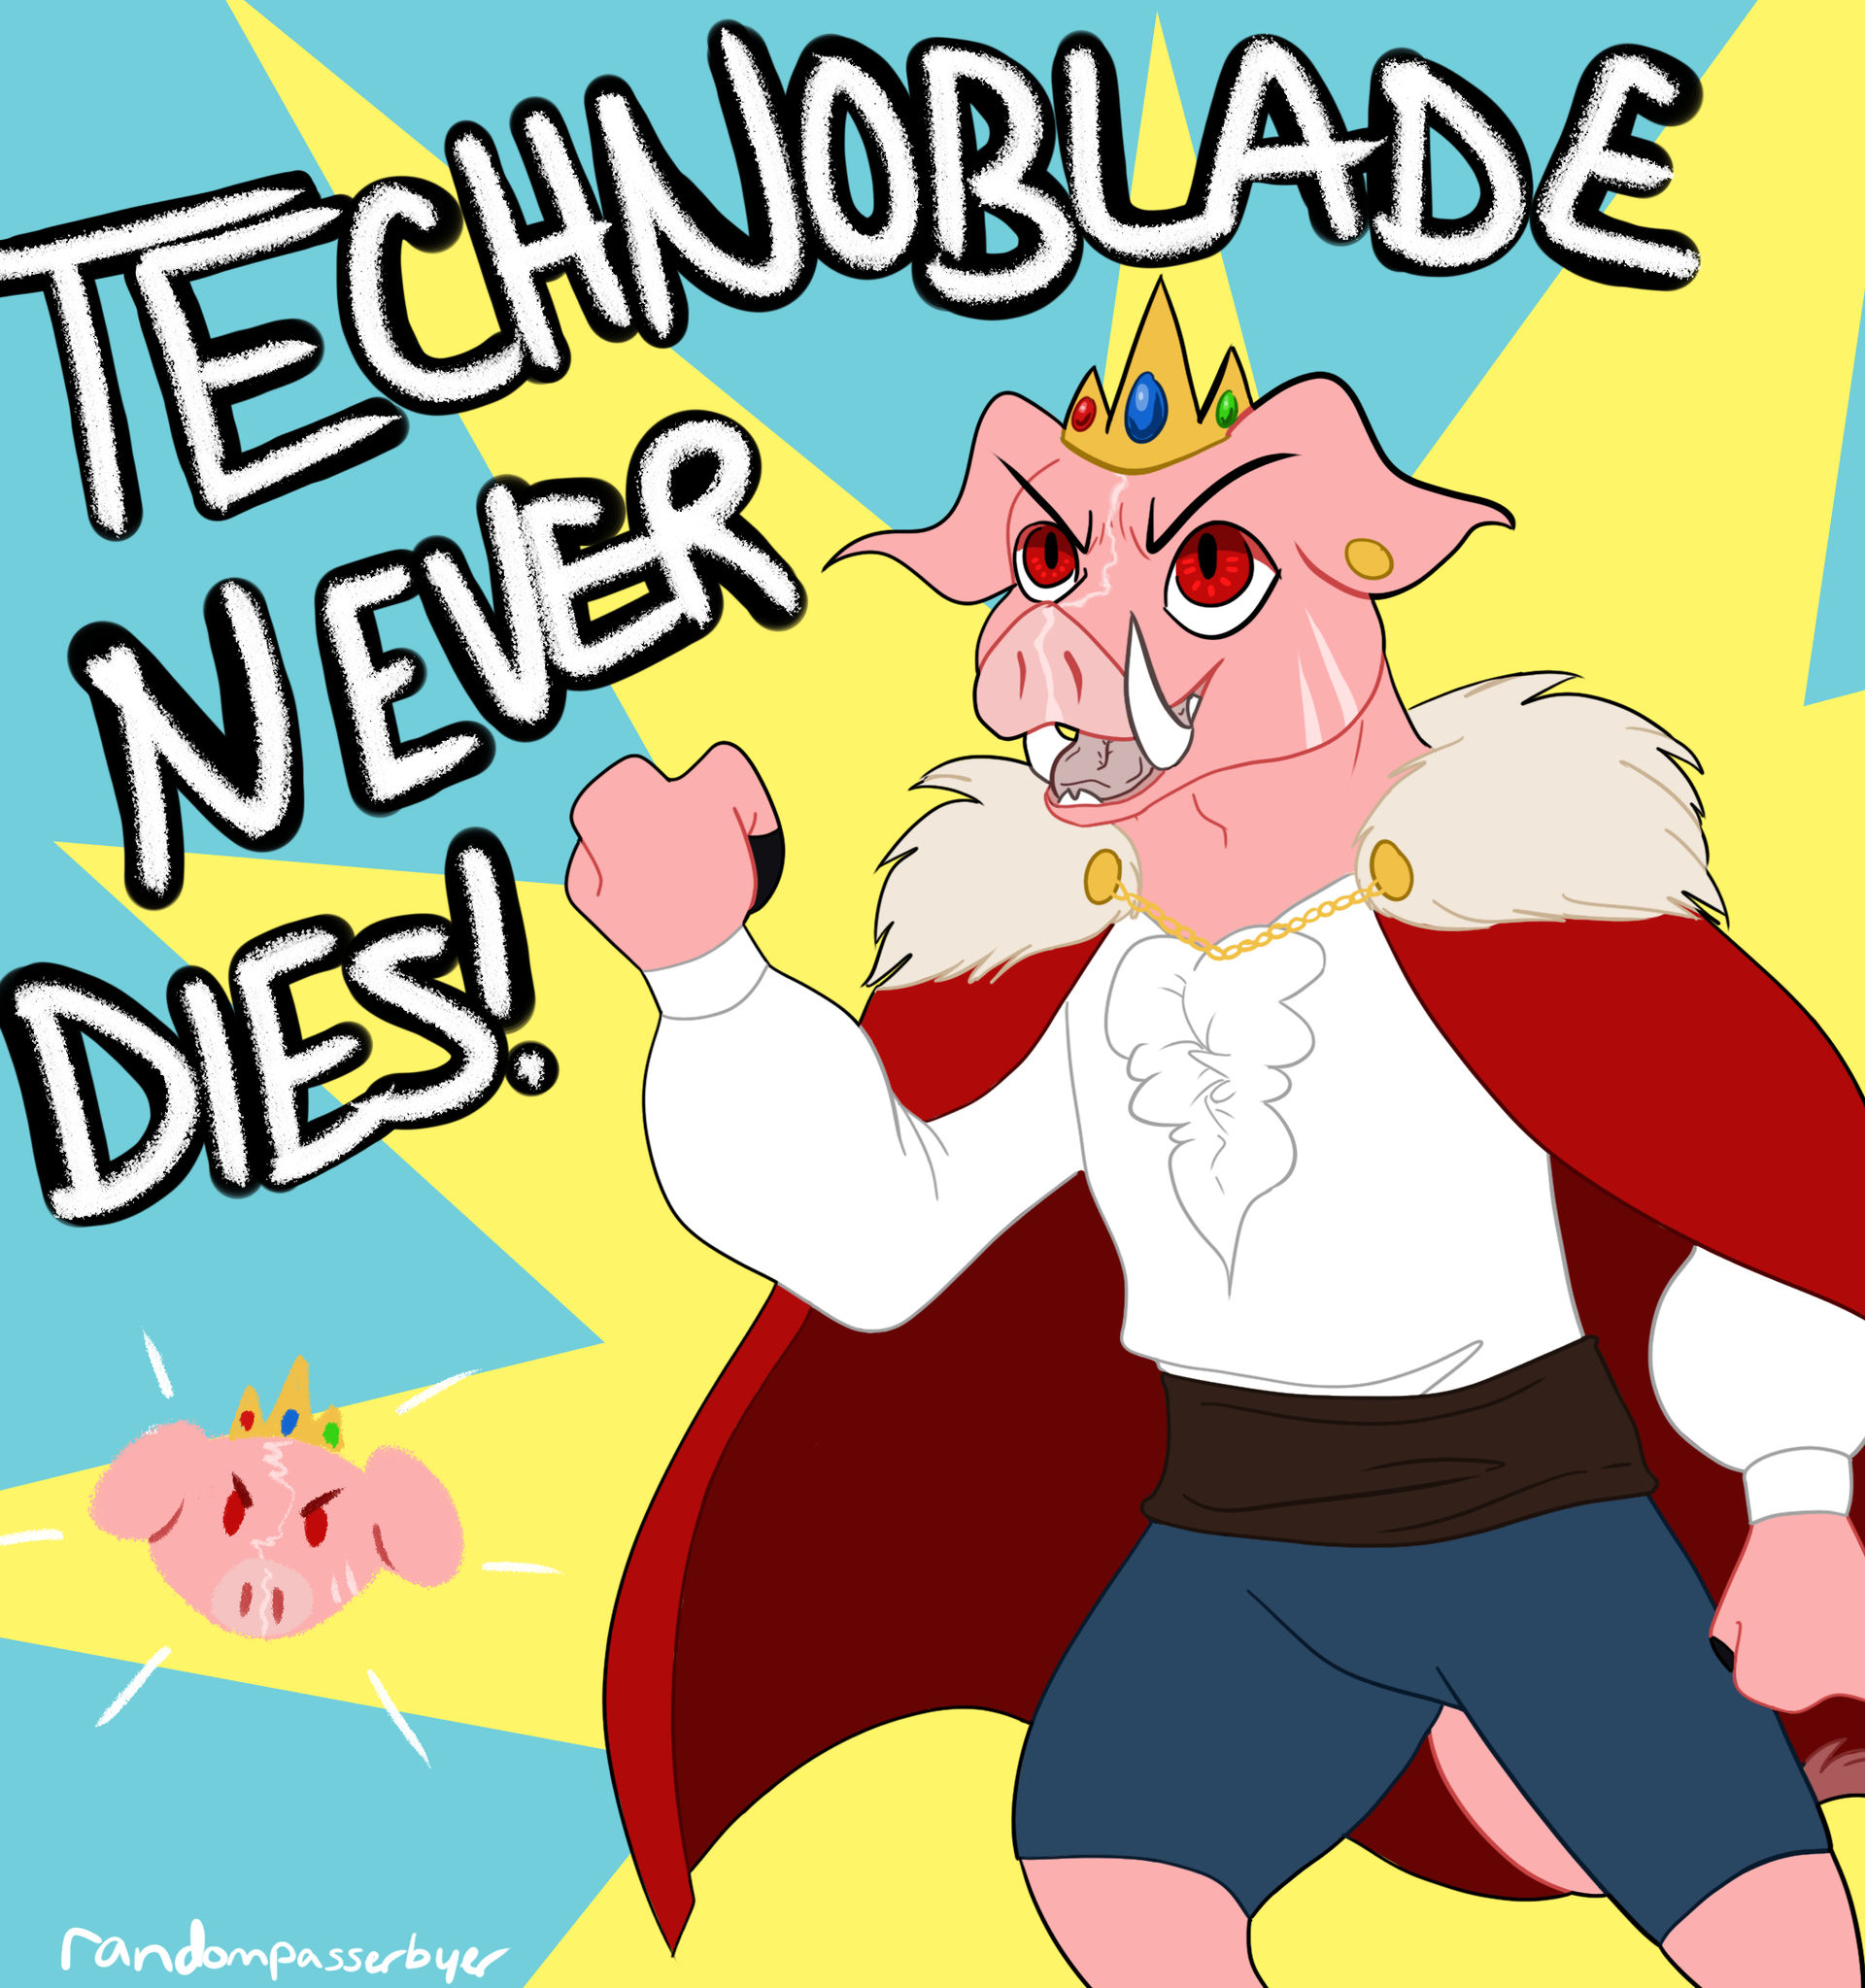 Technoblade Never Dies! by randompasserbyer on DeviantArt